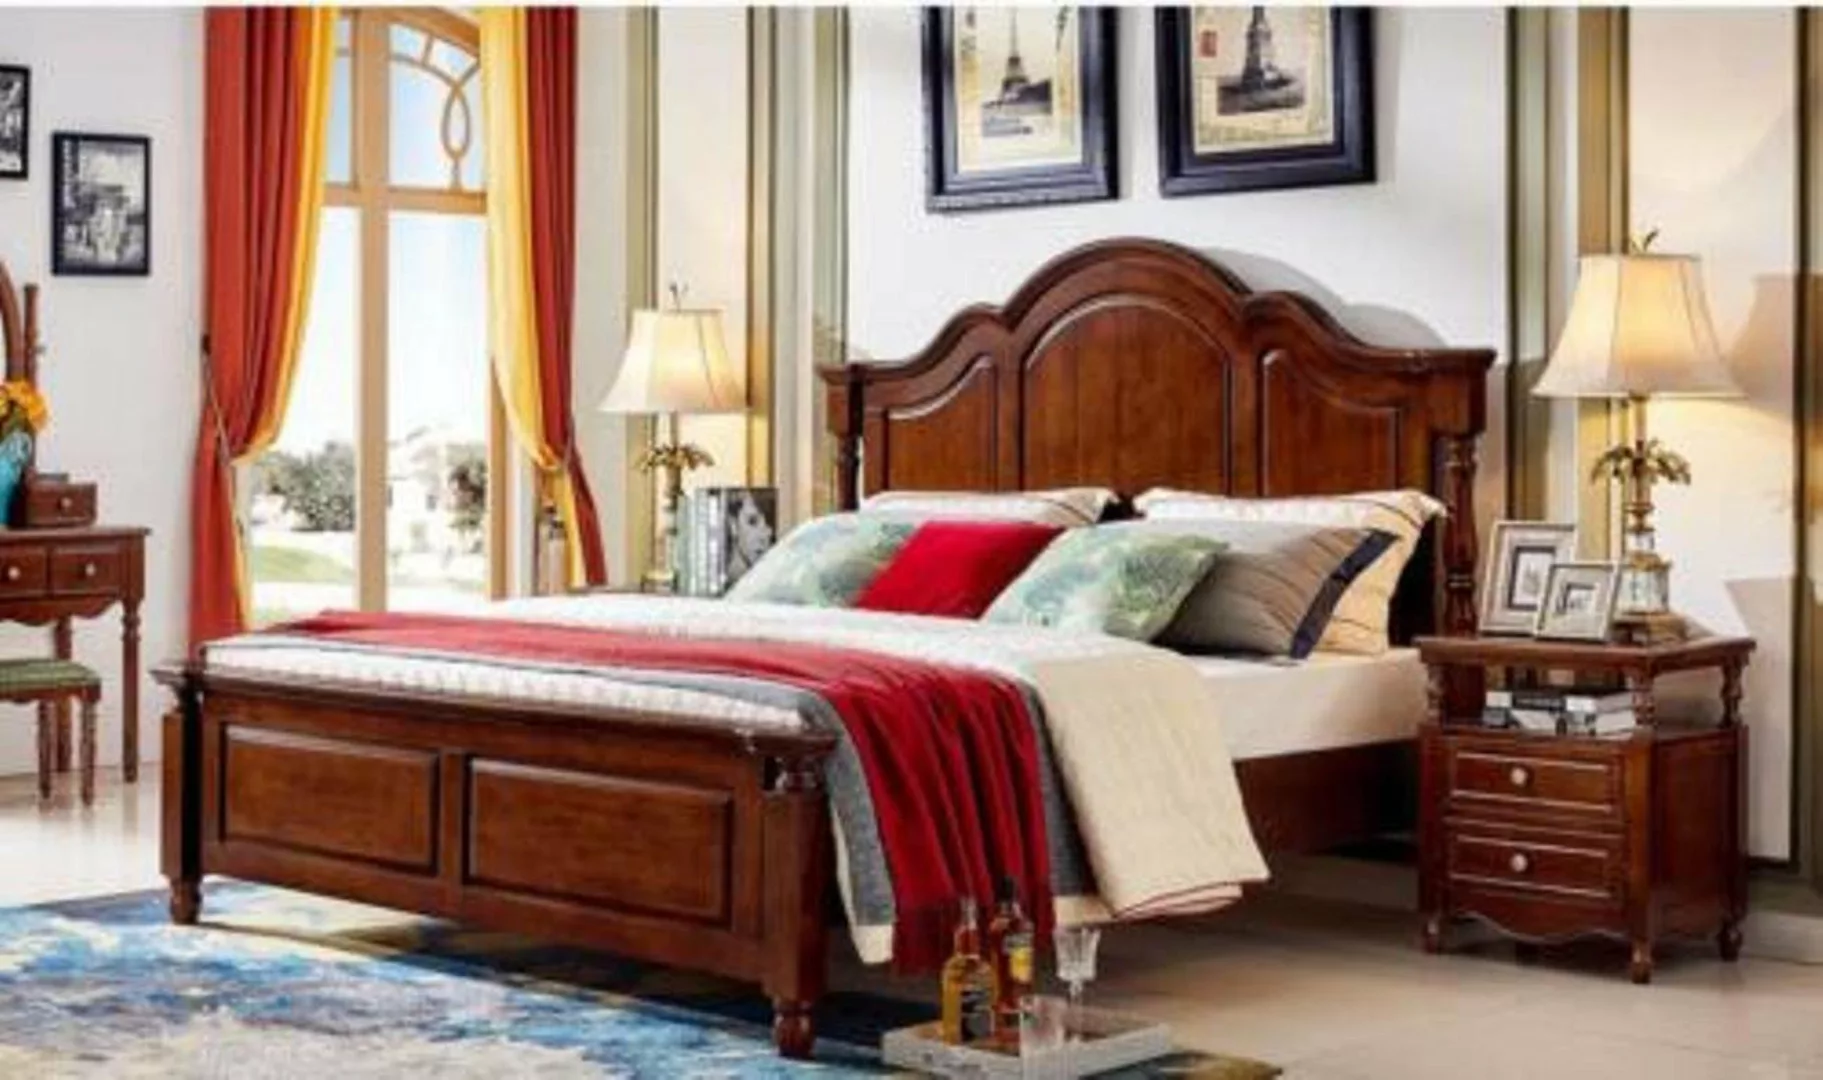 JVmoebel Bett, Art Deco Doppelbett Schlafzimmer Bett Möbel Holz Design Bett günstig online kaufen